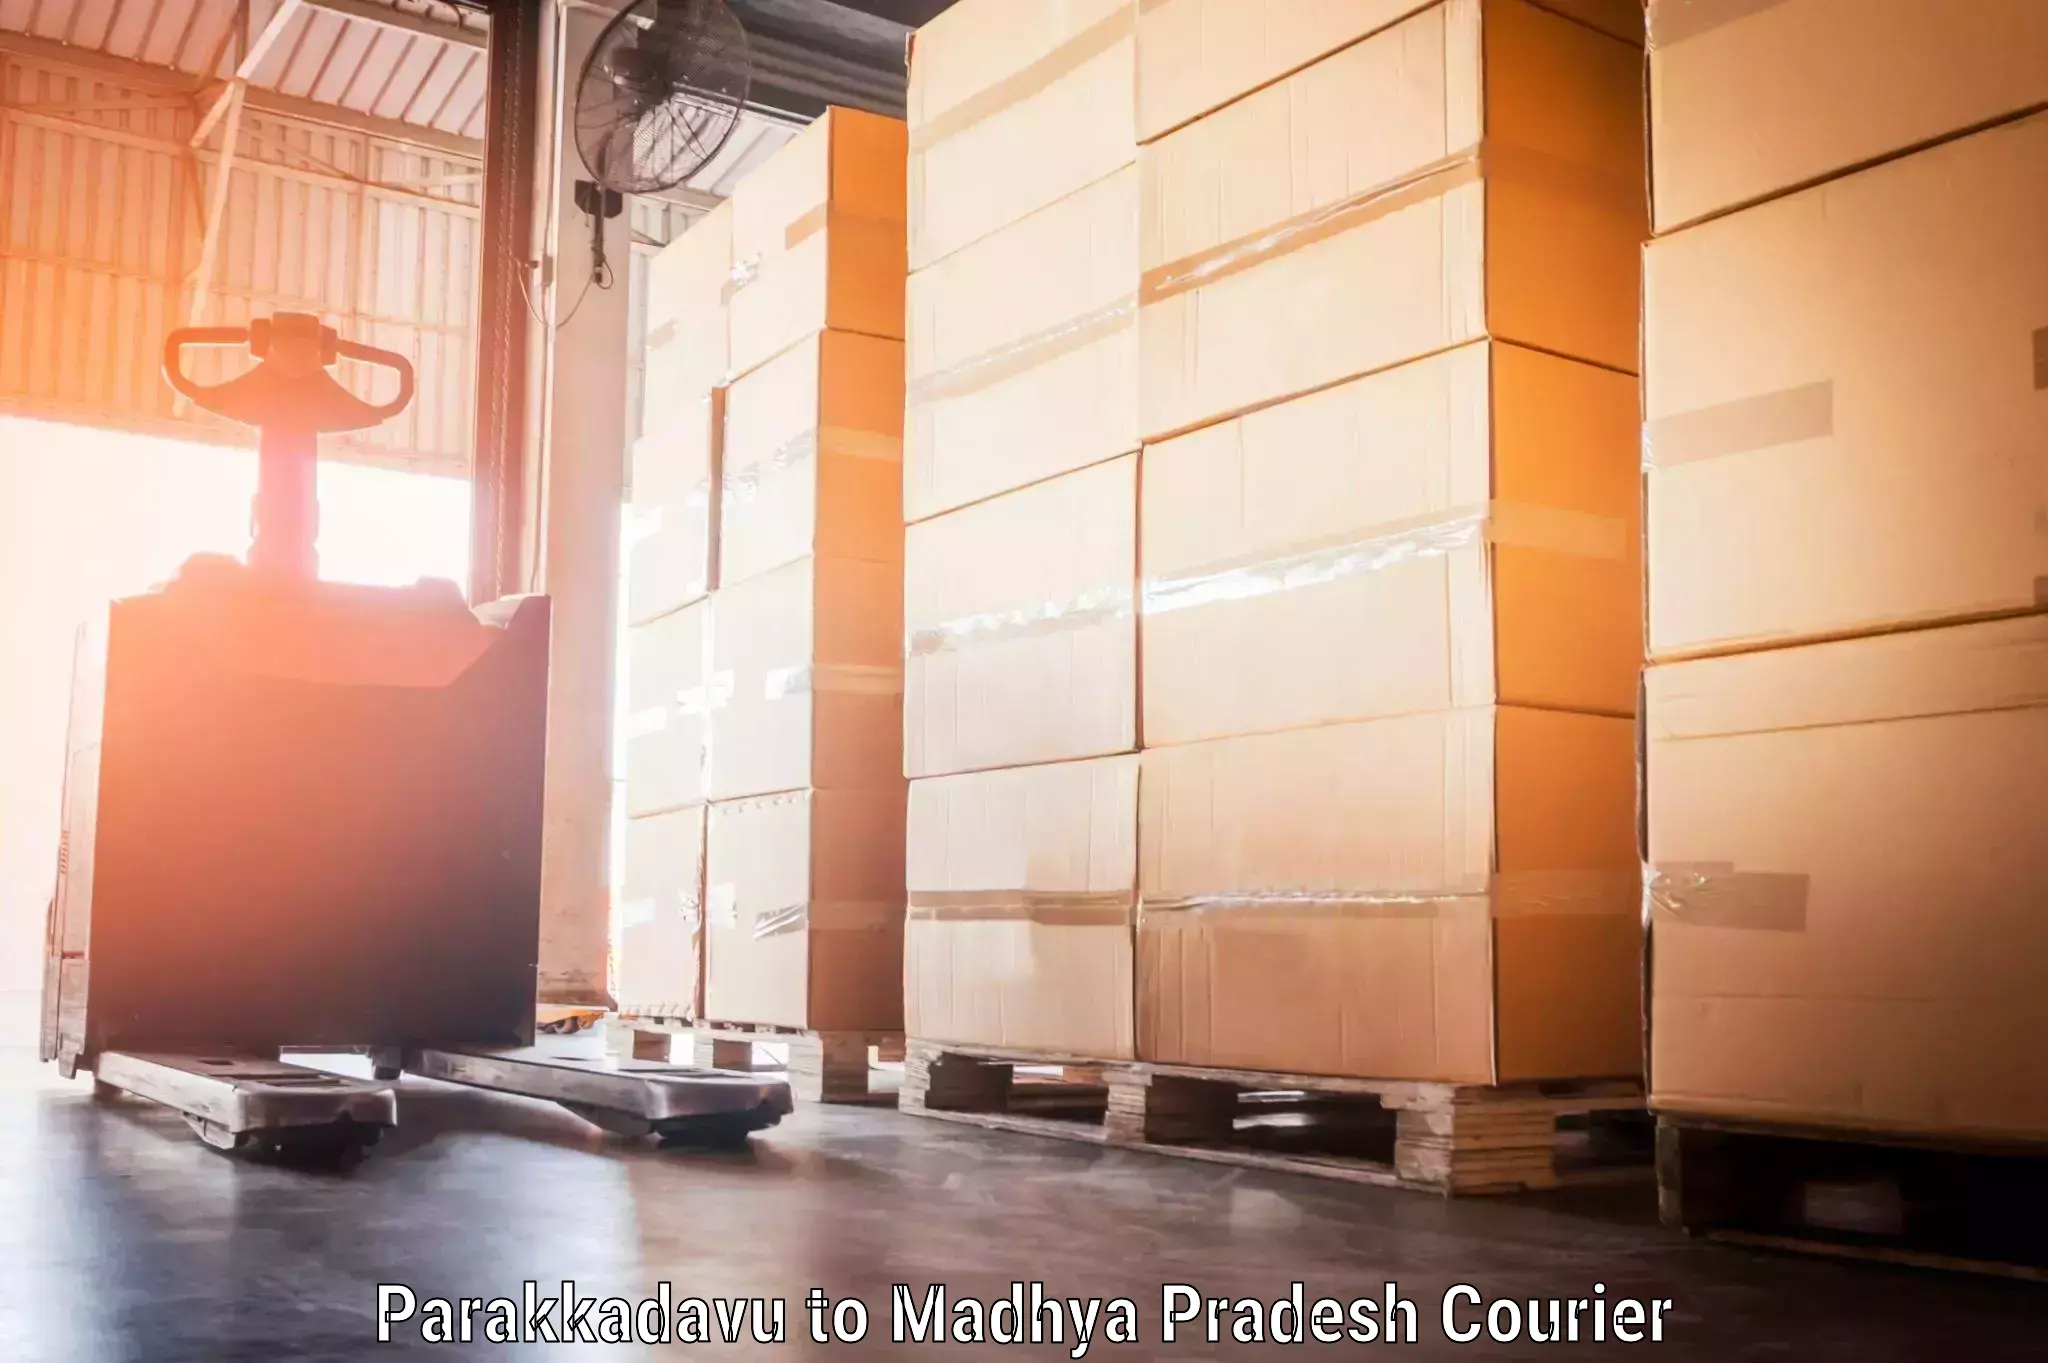 Digital baggage courier Parakkadavu to Mandideep